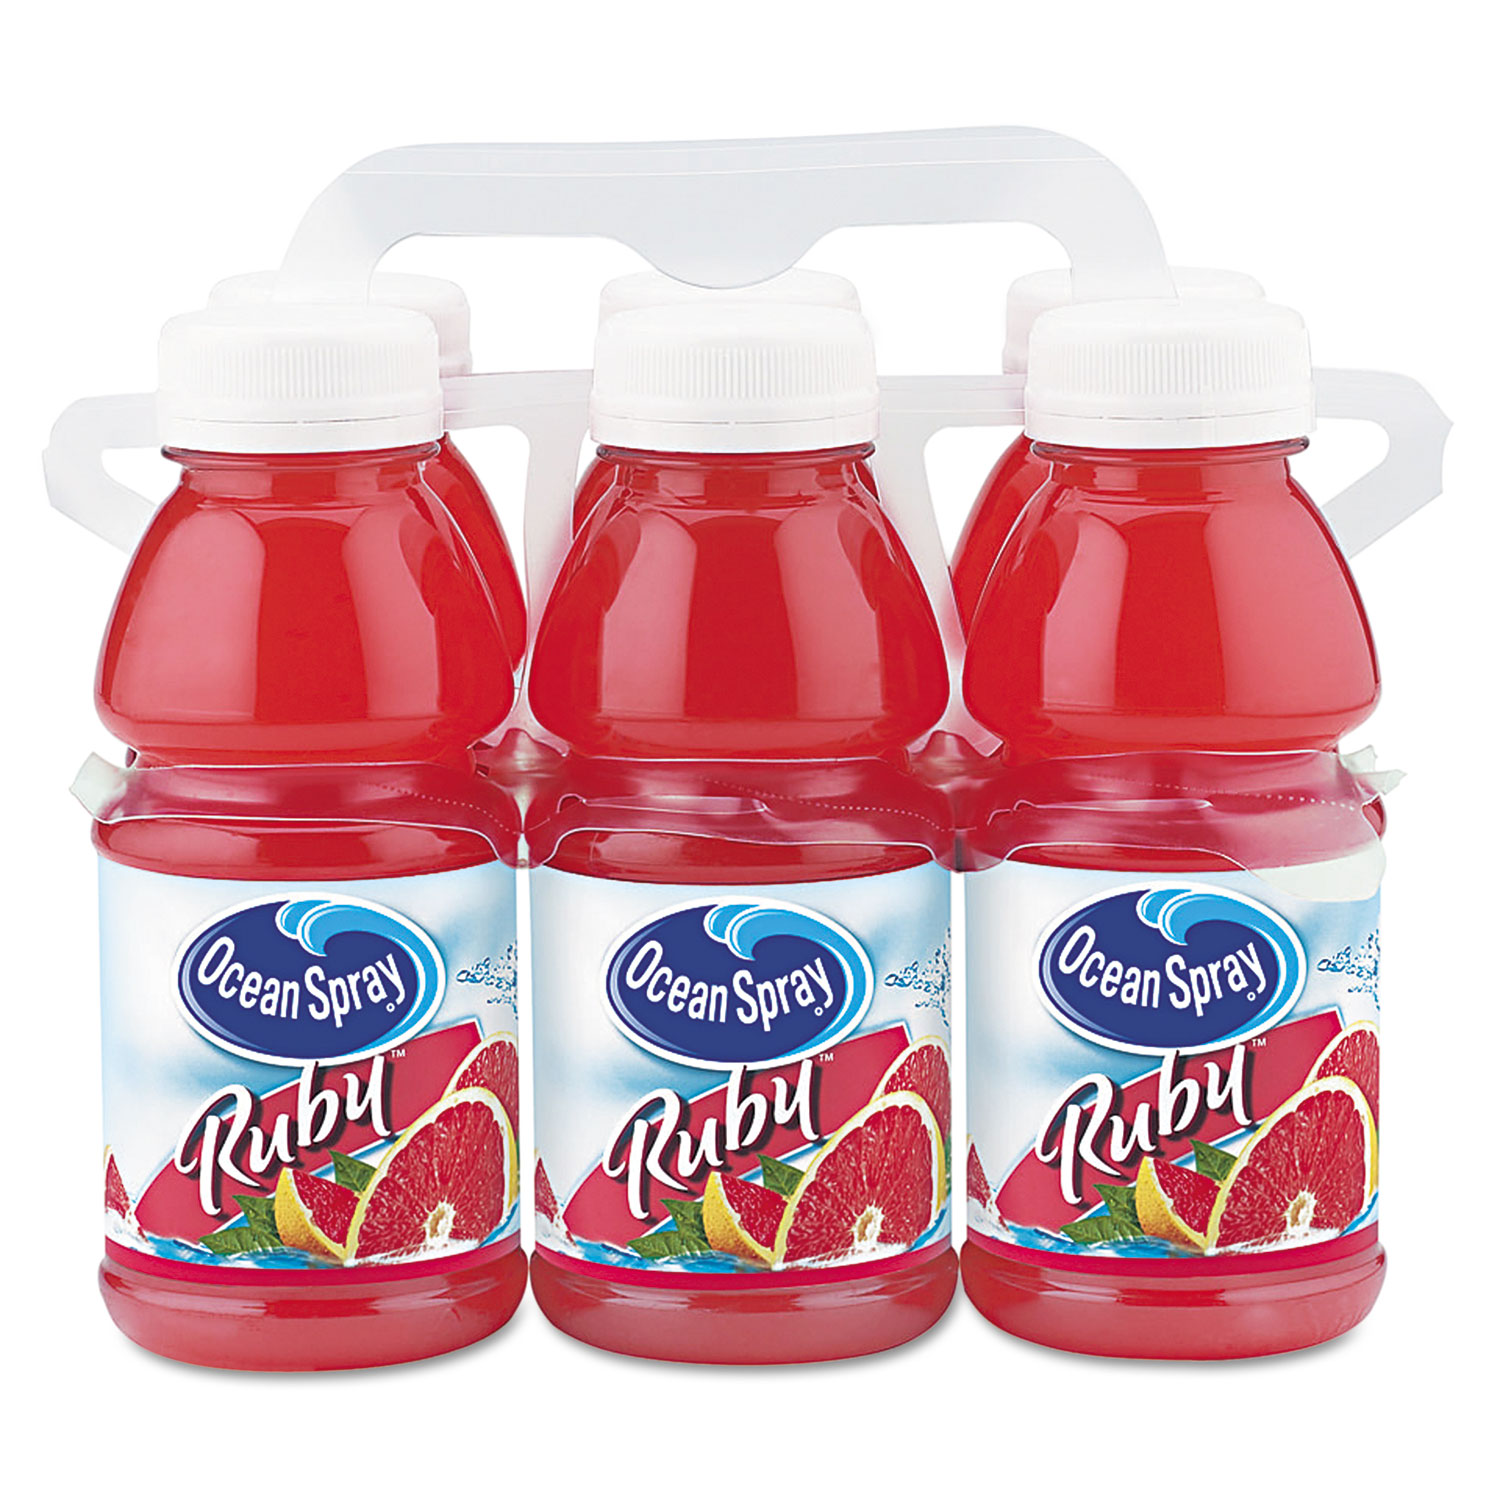 Red Ruby Grapefruit Juice, 10oz Bottle, 6/Pack